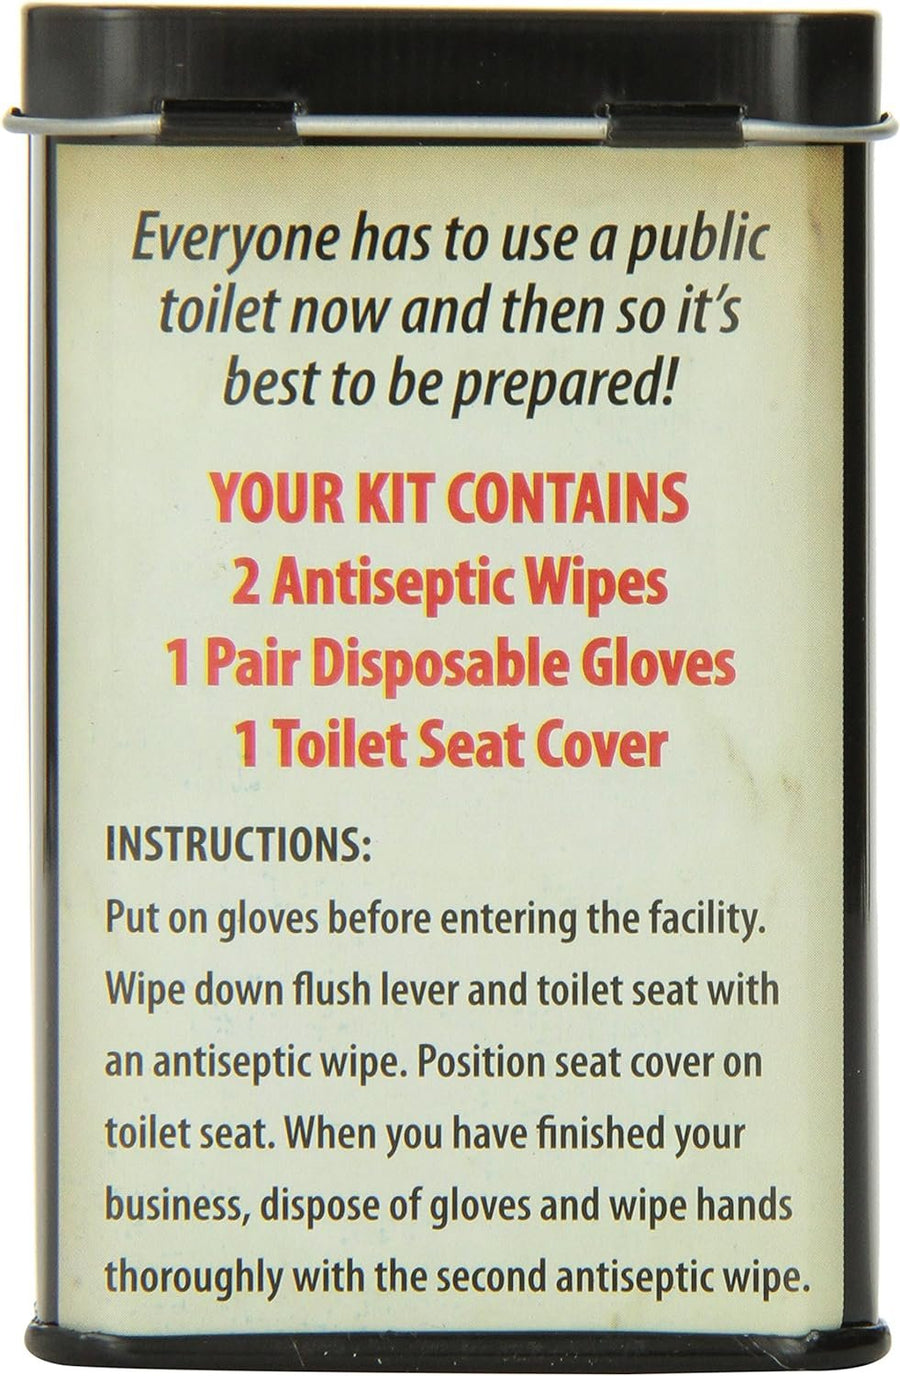 Accoutrements Public Toilet Survival Kit